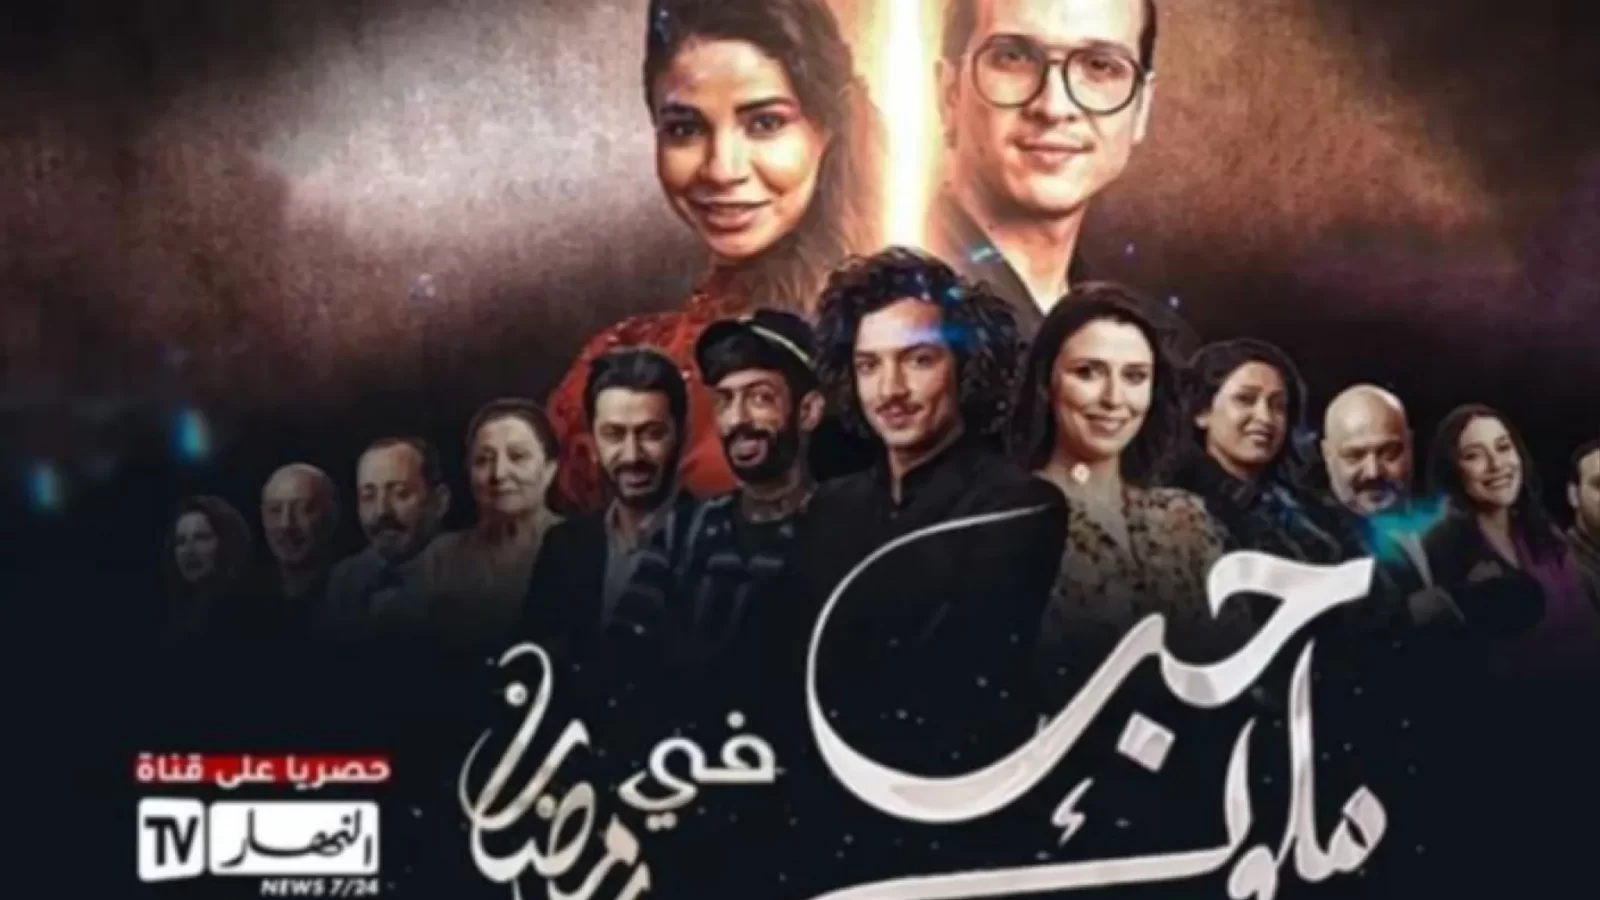 أثار انتقادات لاذعة/ قناة النهار تعتذر لمتابعيها وتوقف بث مسلسل تونسي جزائري